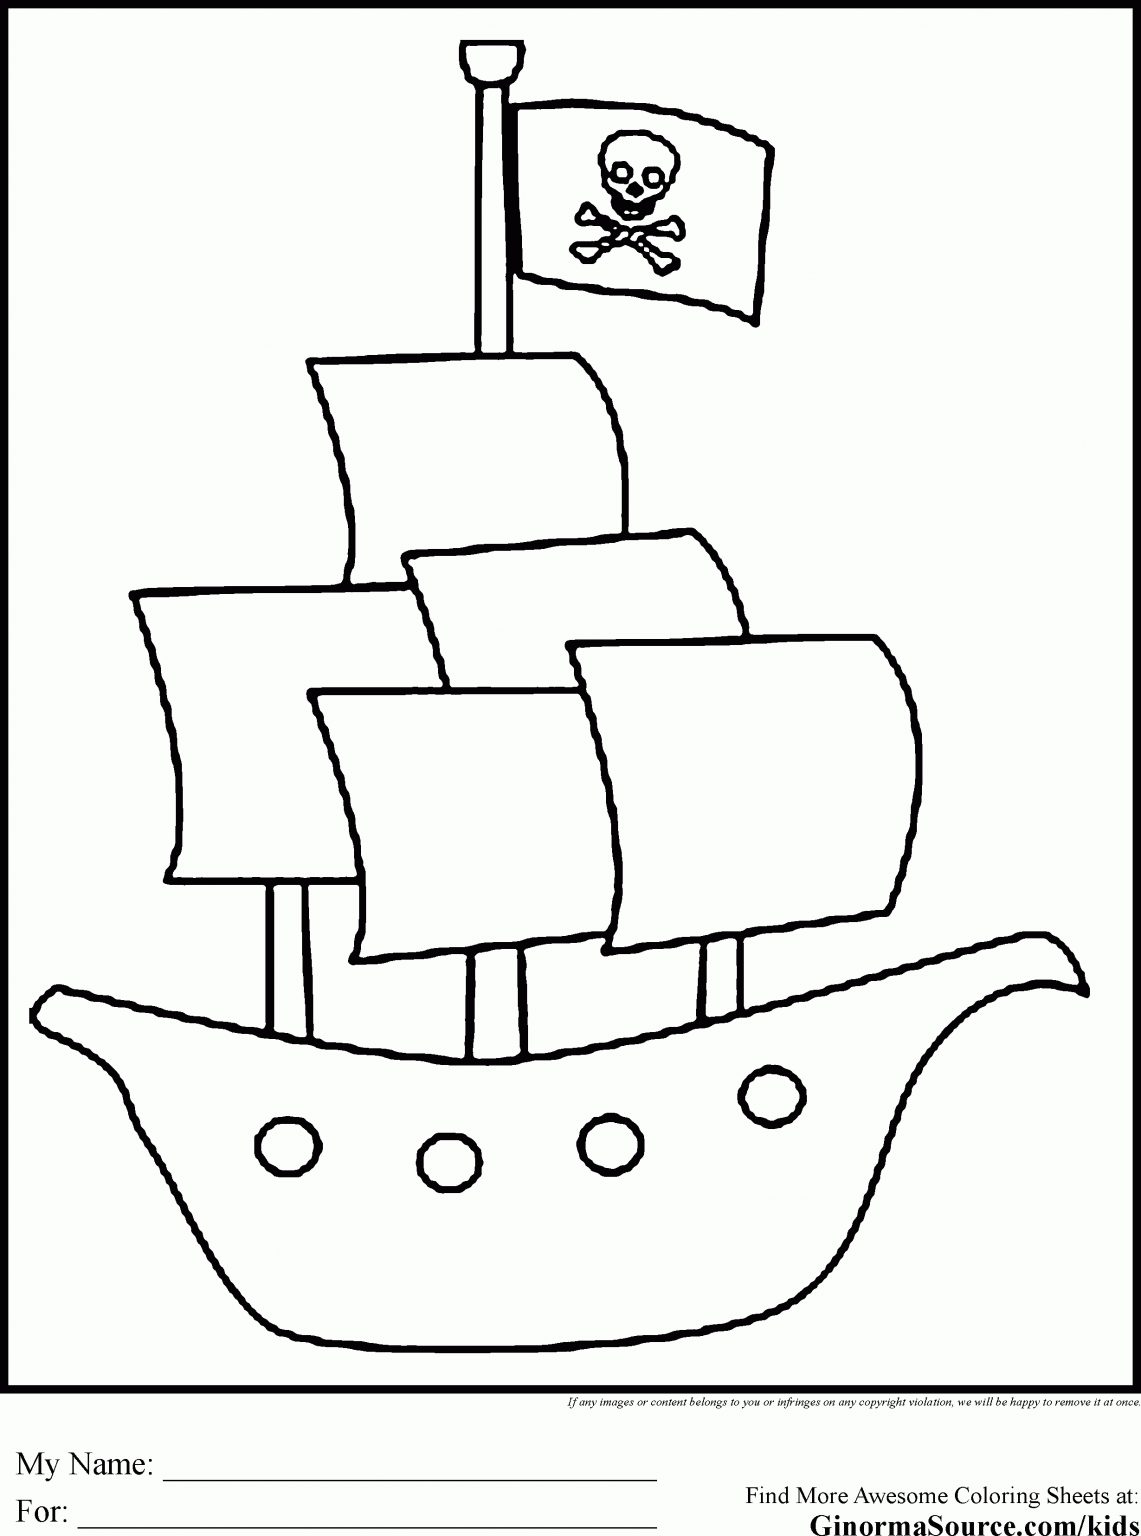 malvorlage piratenschiff  kinderbilderdownload